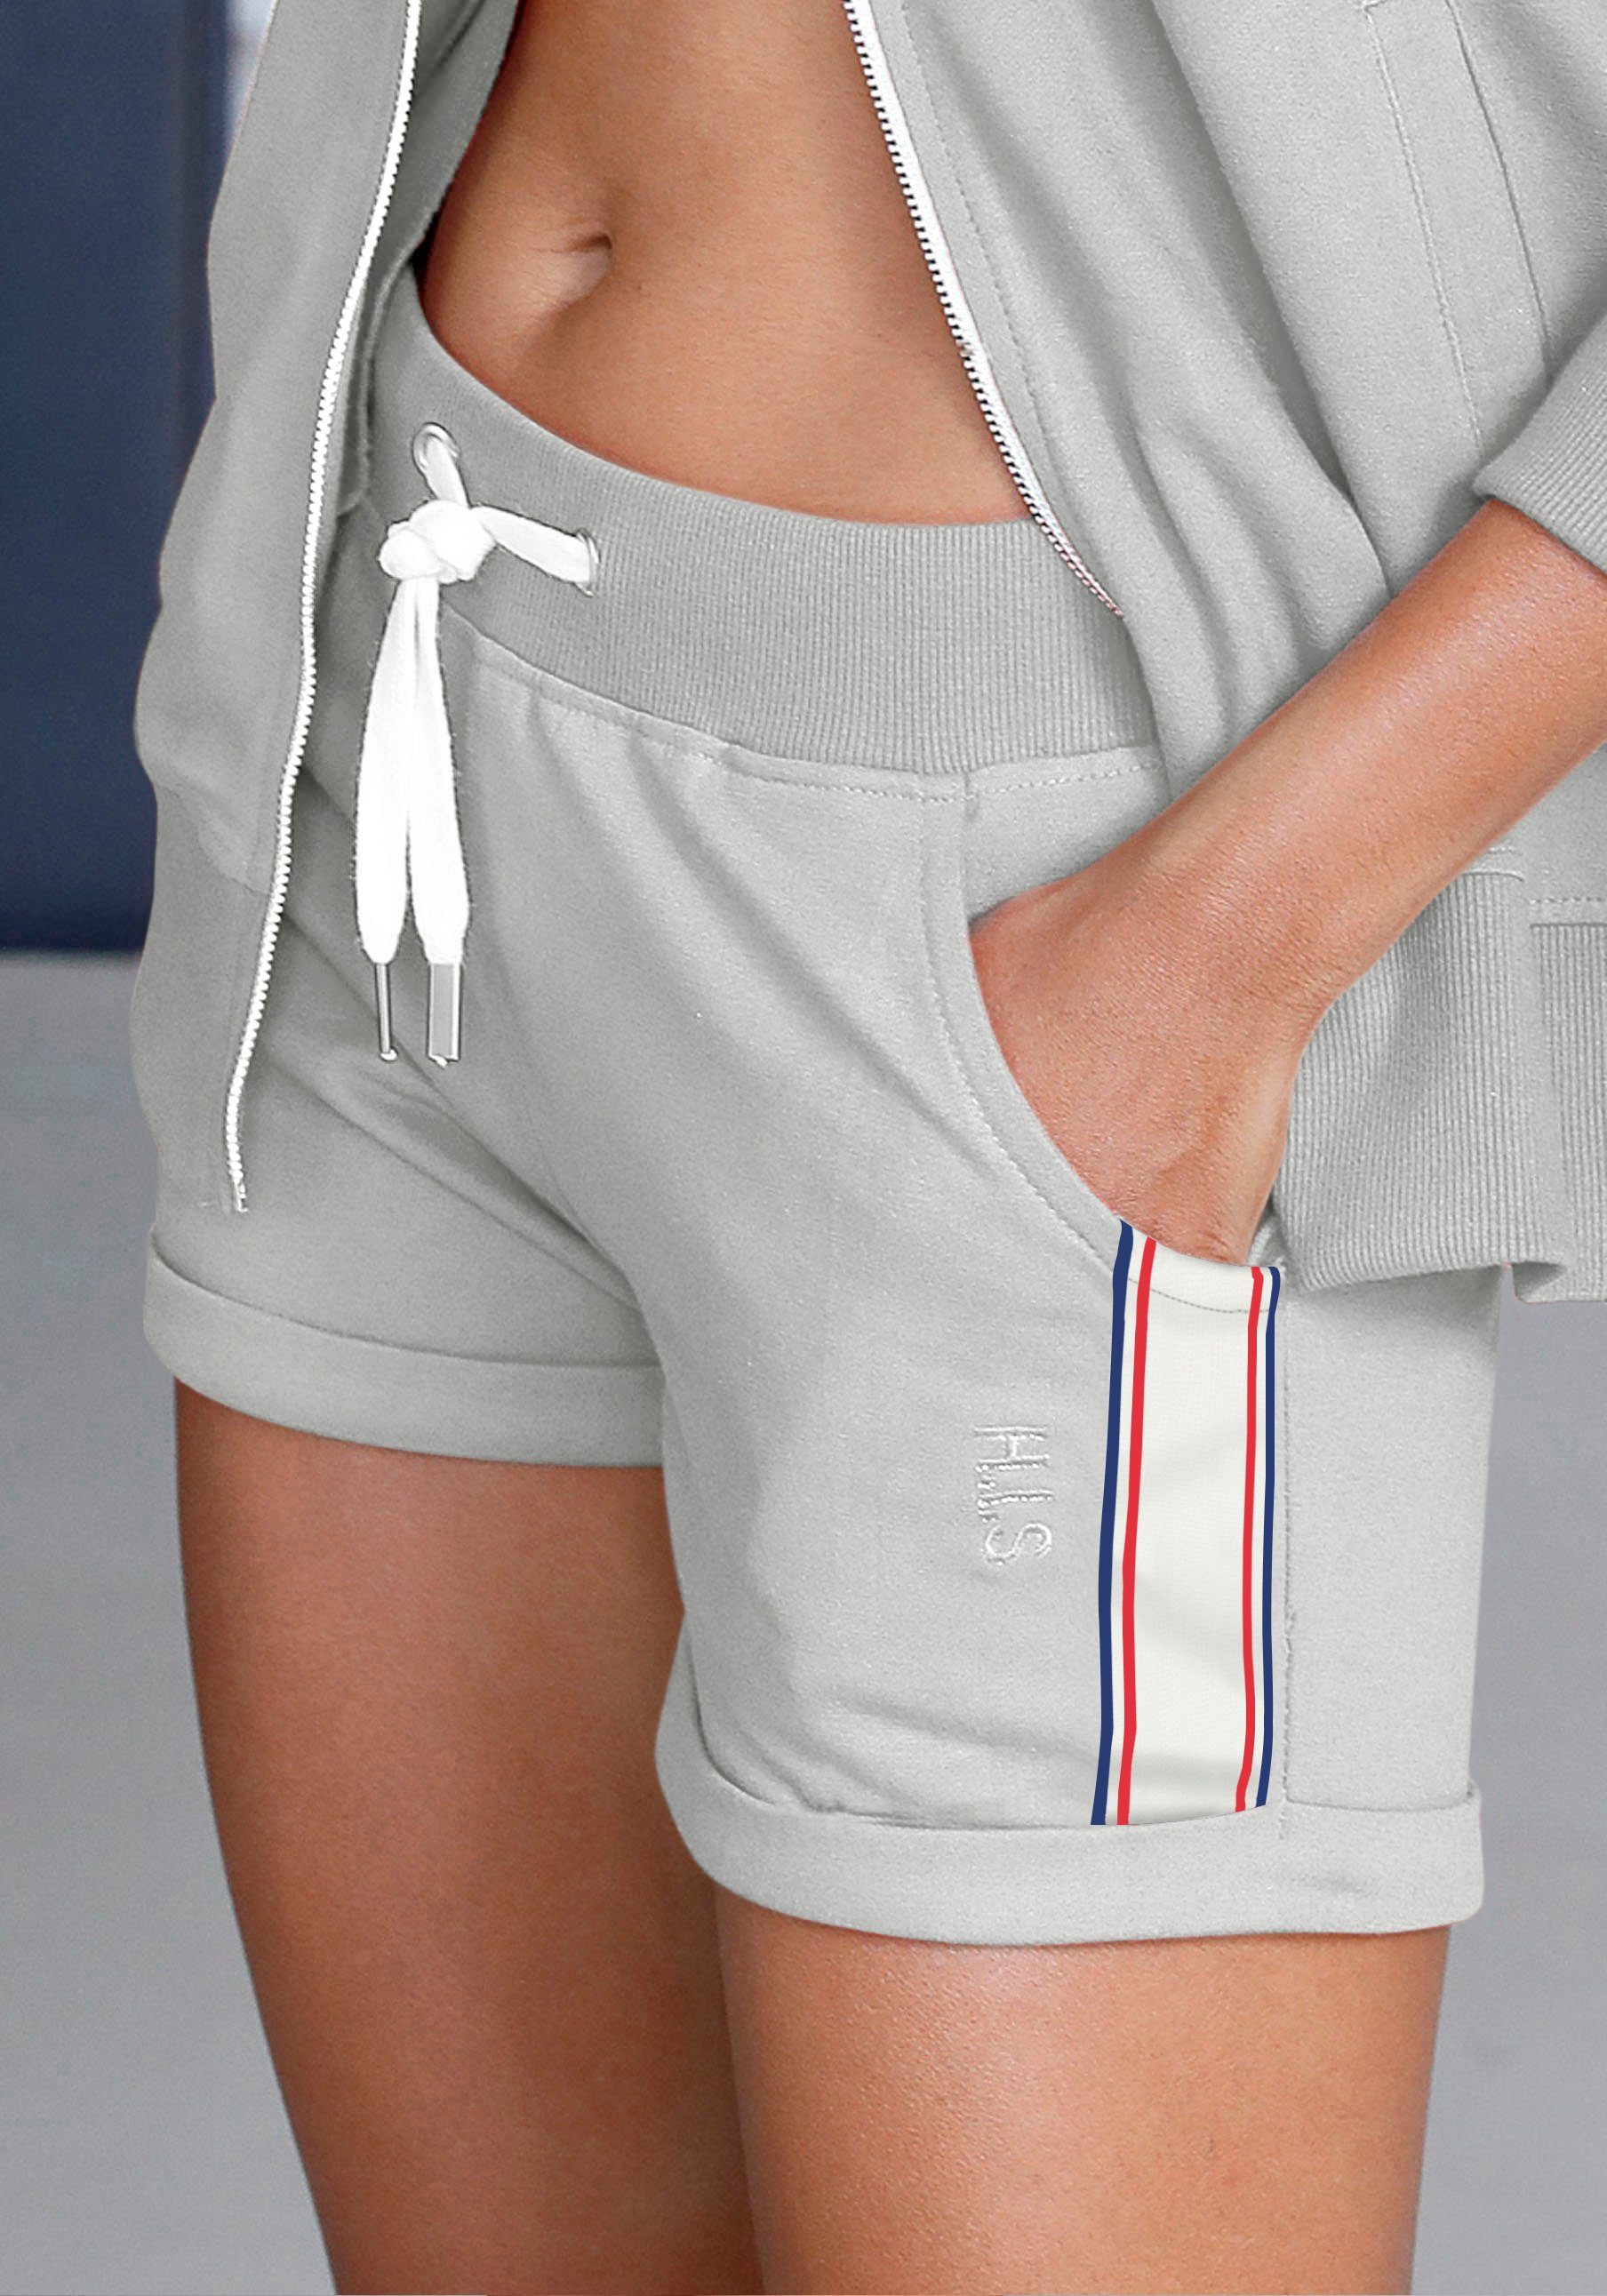 Tapestreifen Shorts mit grau-meliert seitlichen H.I.S